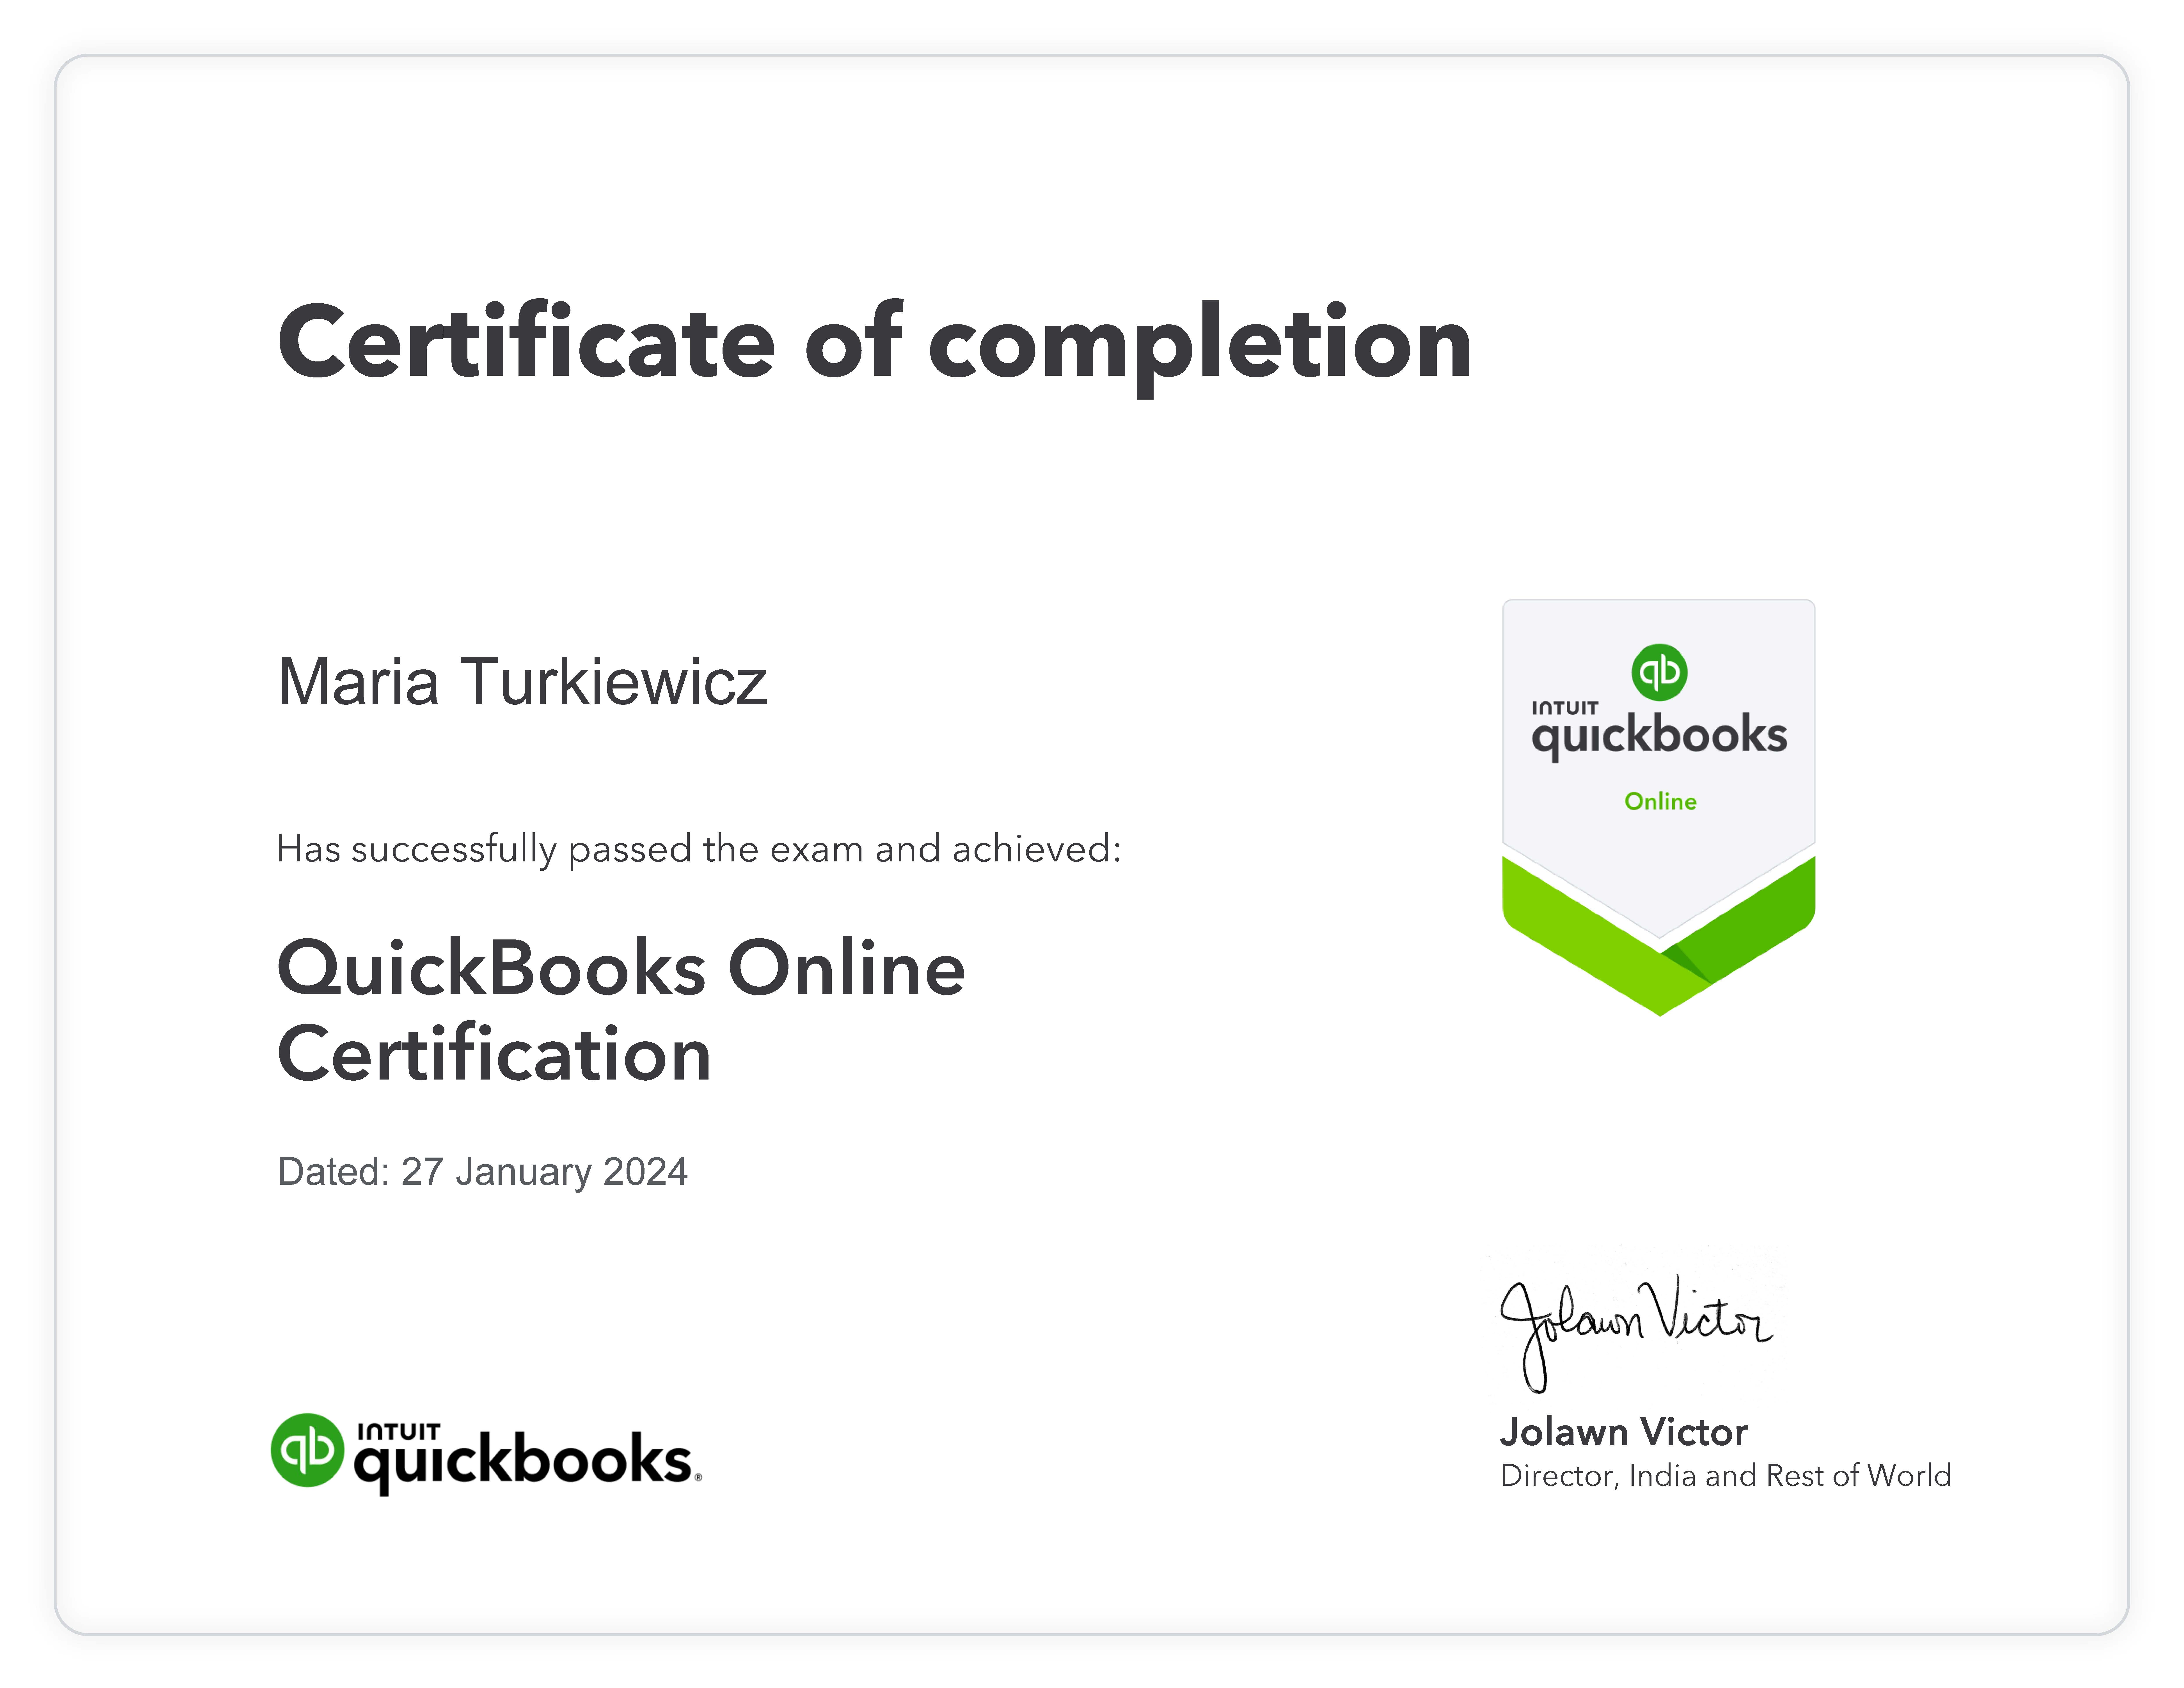 QuickBooksOnline - Maria Turkiewicz